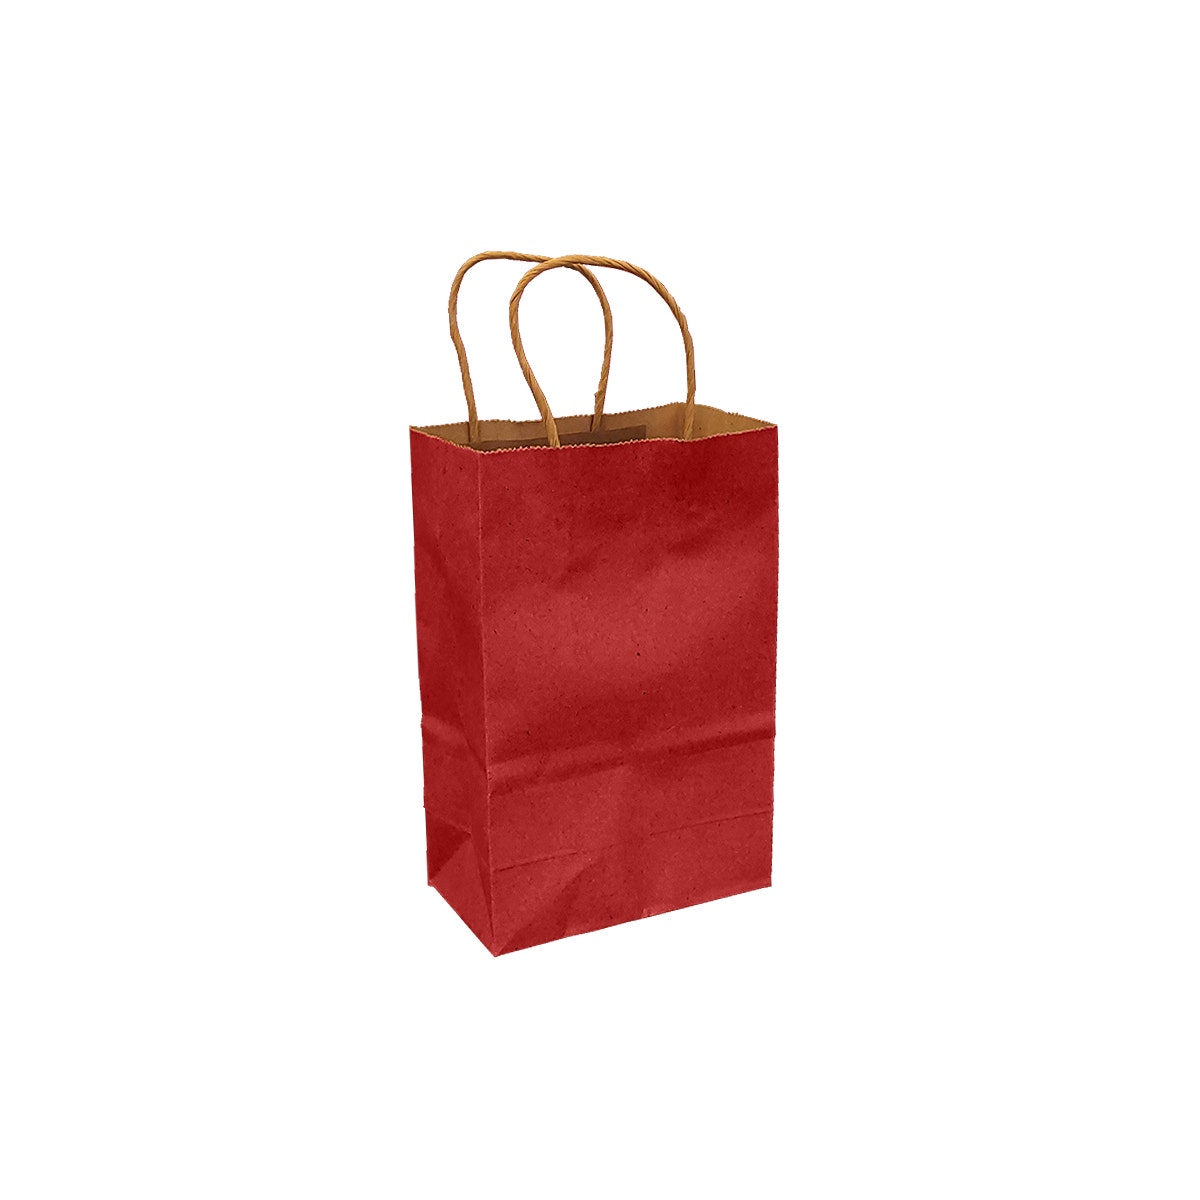 Scarlet Red 100% Recycled Kraft Paper Bags With Handles - Eddie's Hang-Up Display Ltd.